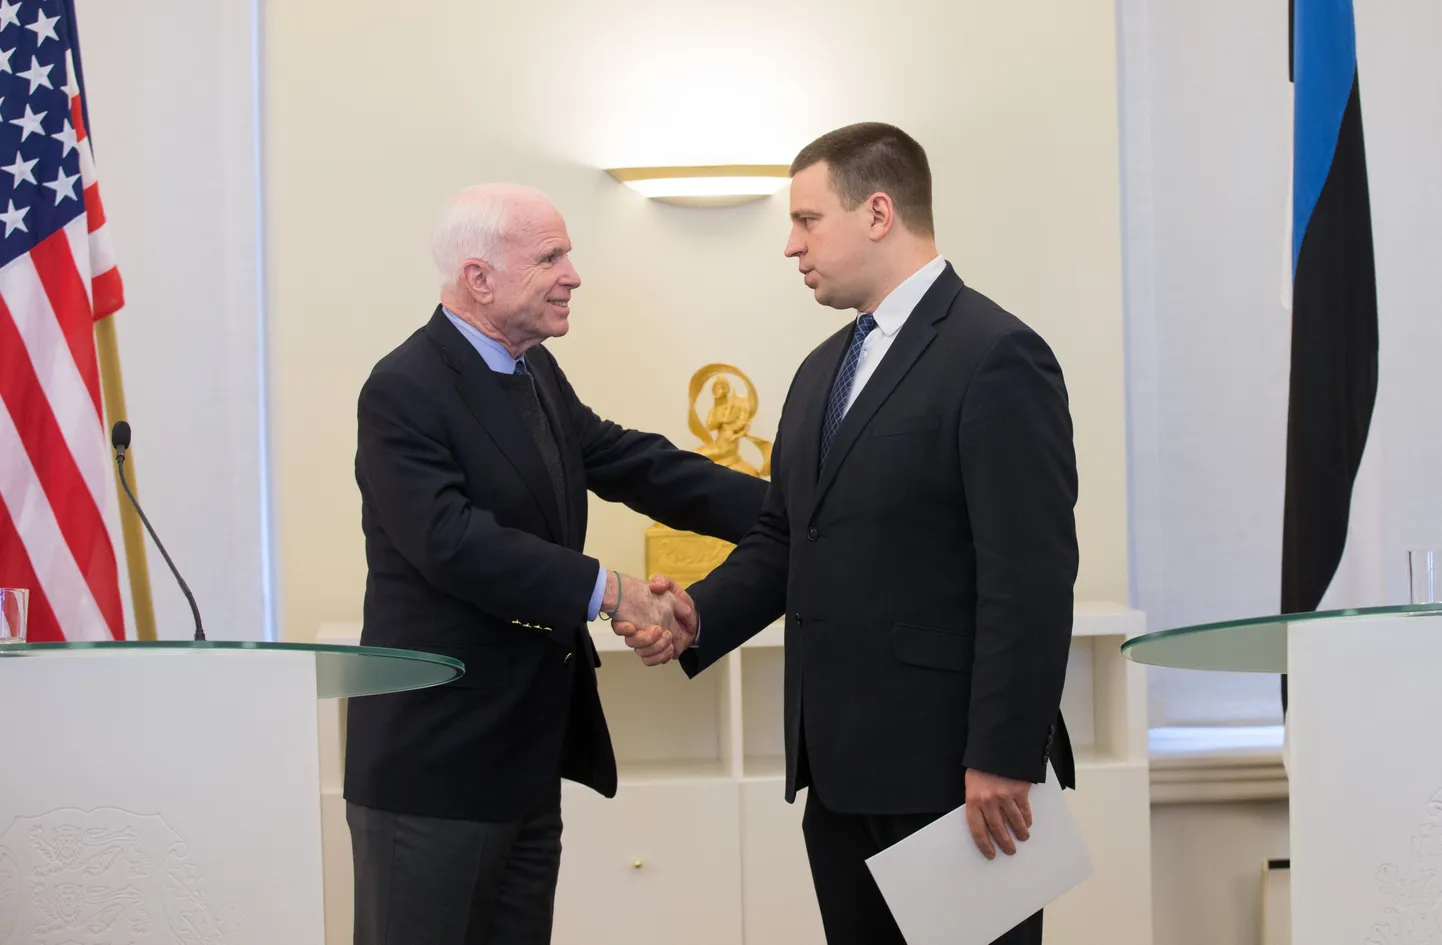 Viimati külastas John McCain Eestit mullu detsembril, mil ta kohtus ka Eesti peaministri Jüri Ratasega.